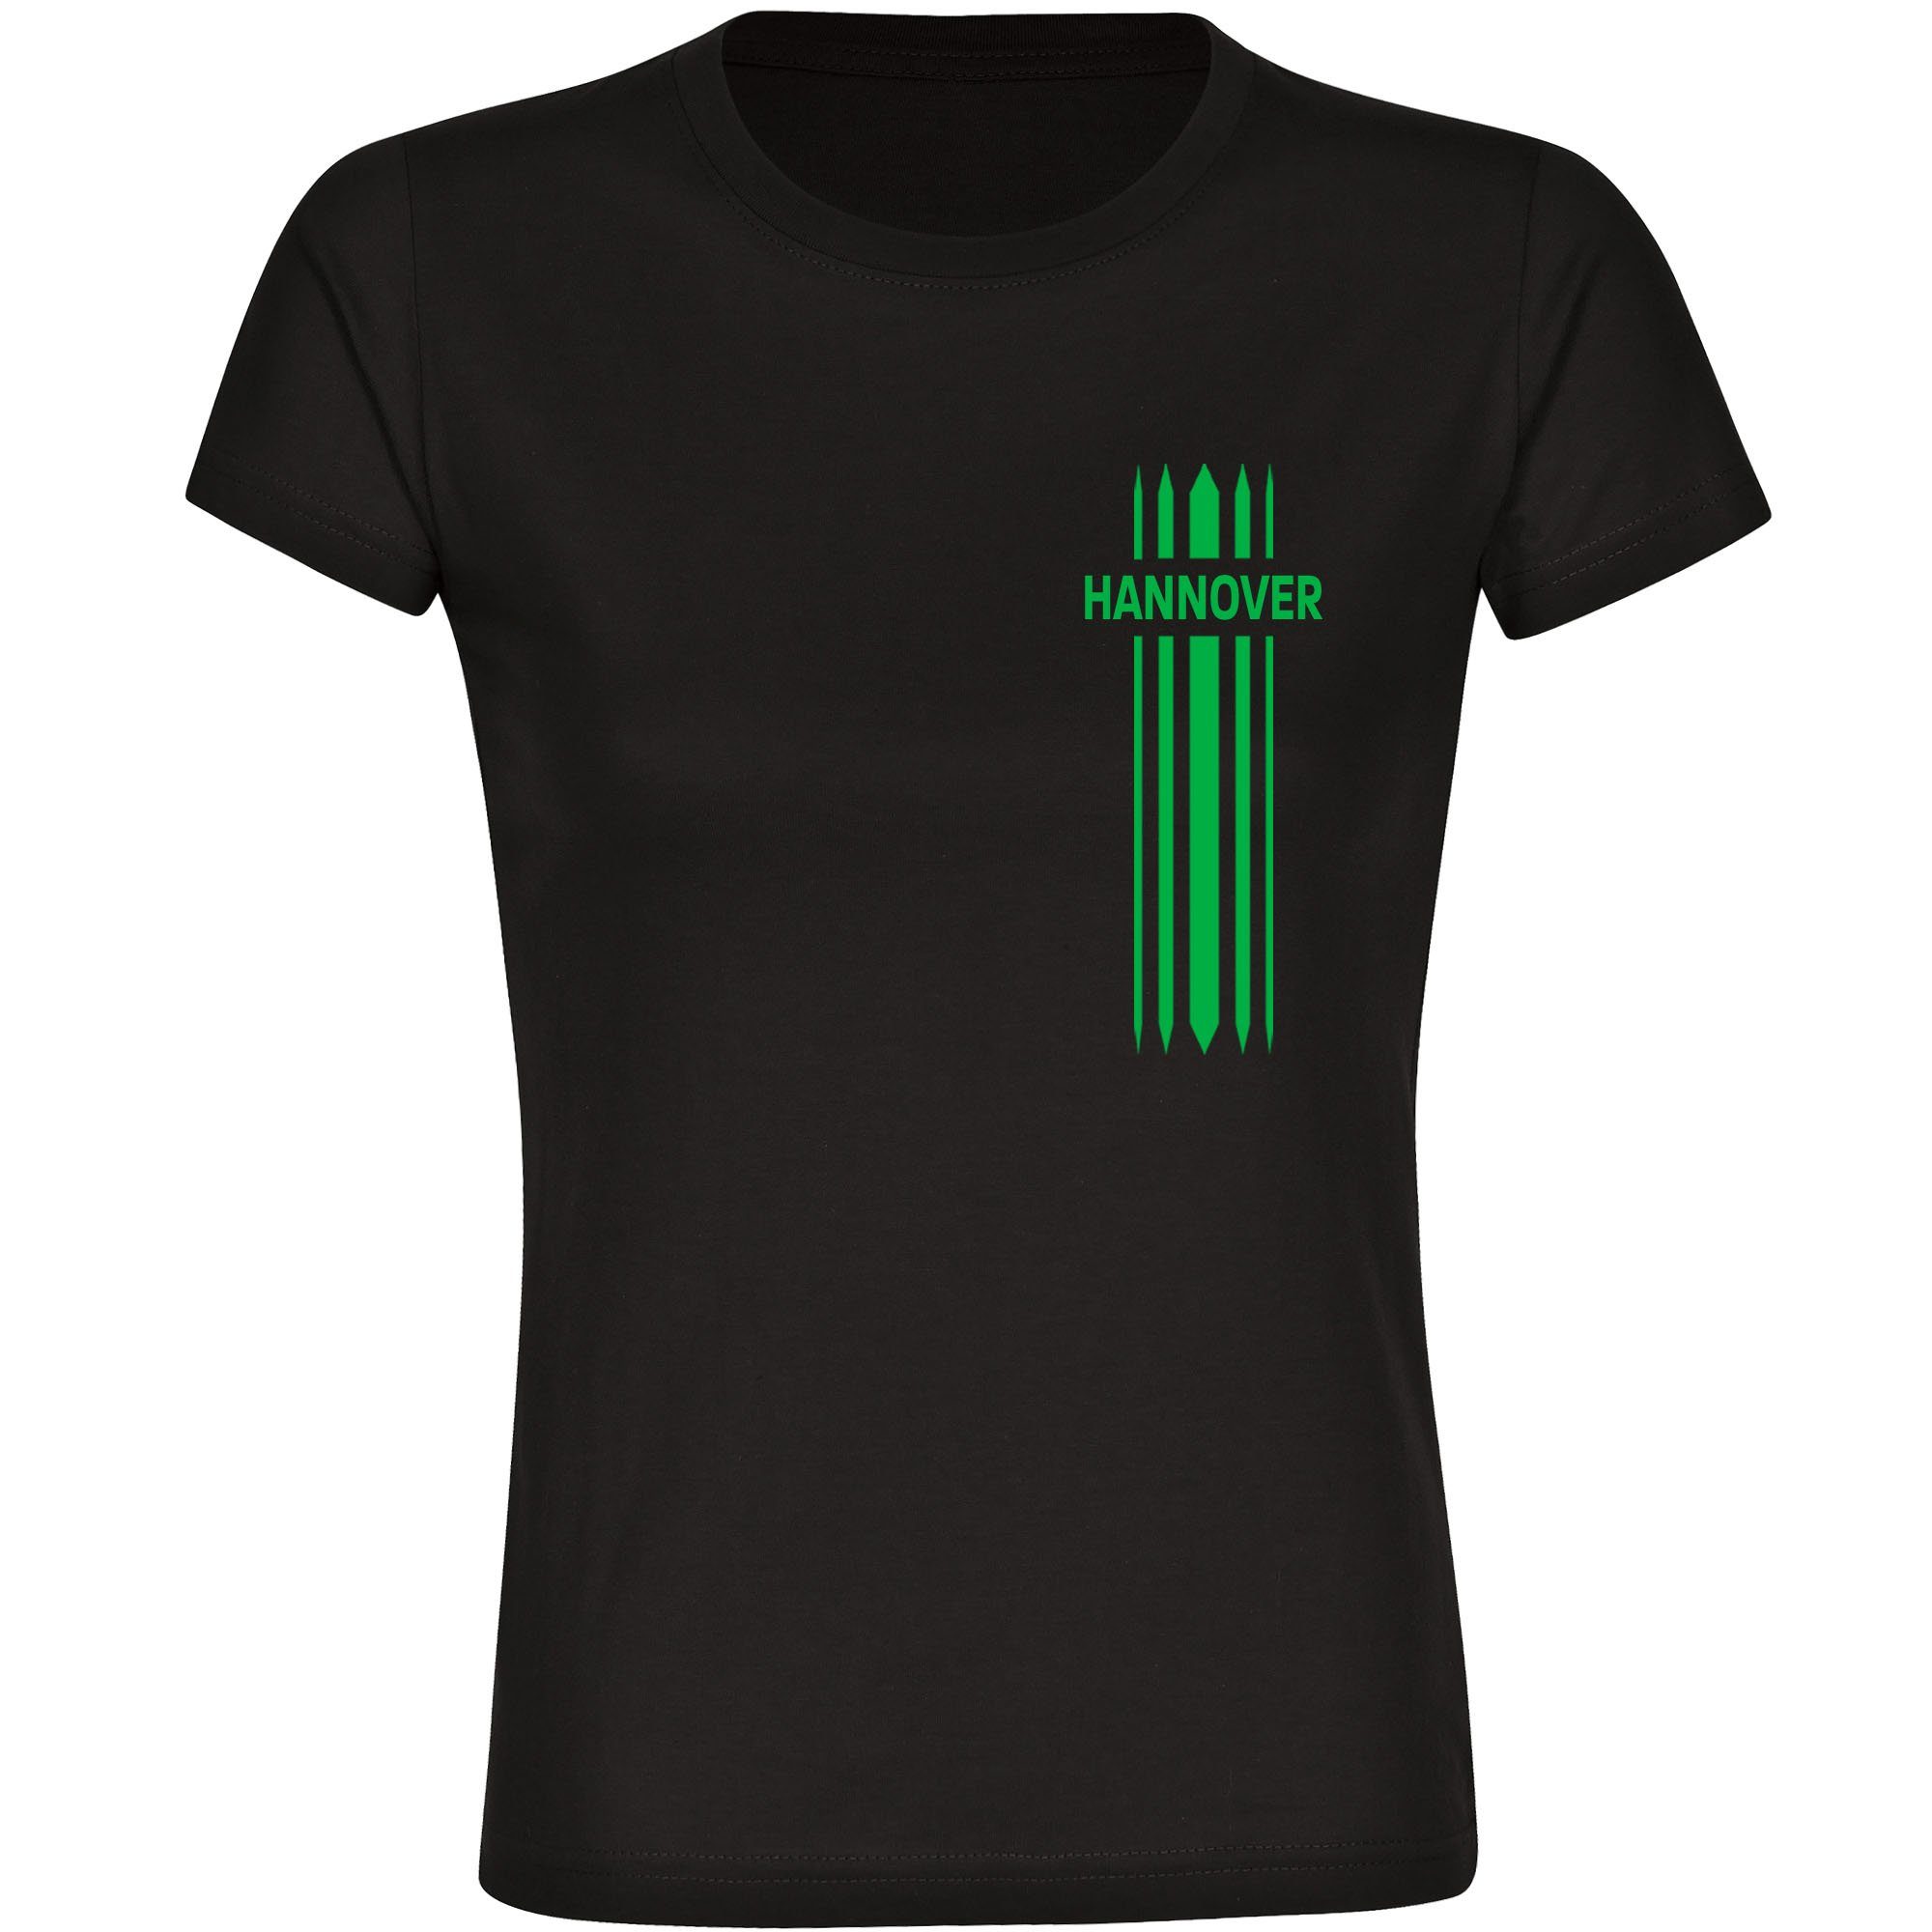 multifanshop T-Shirt Damen Hannover - Streifen - Frauen